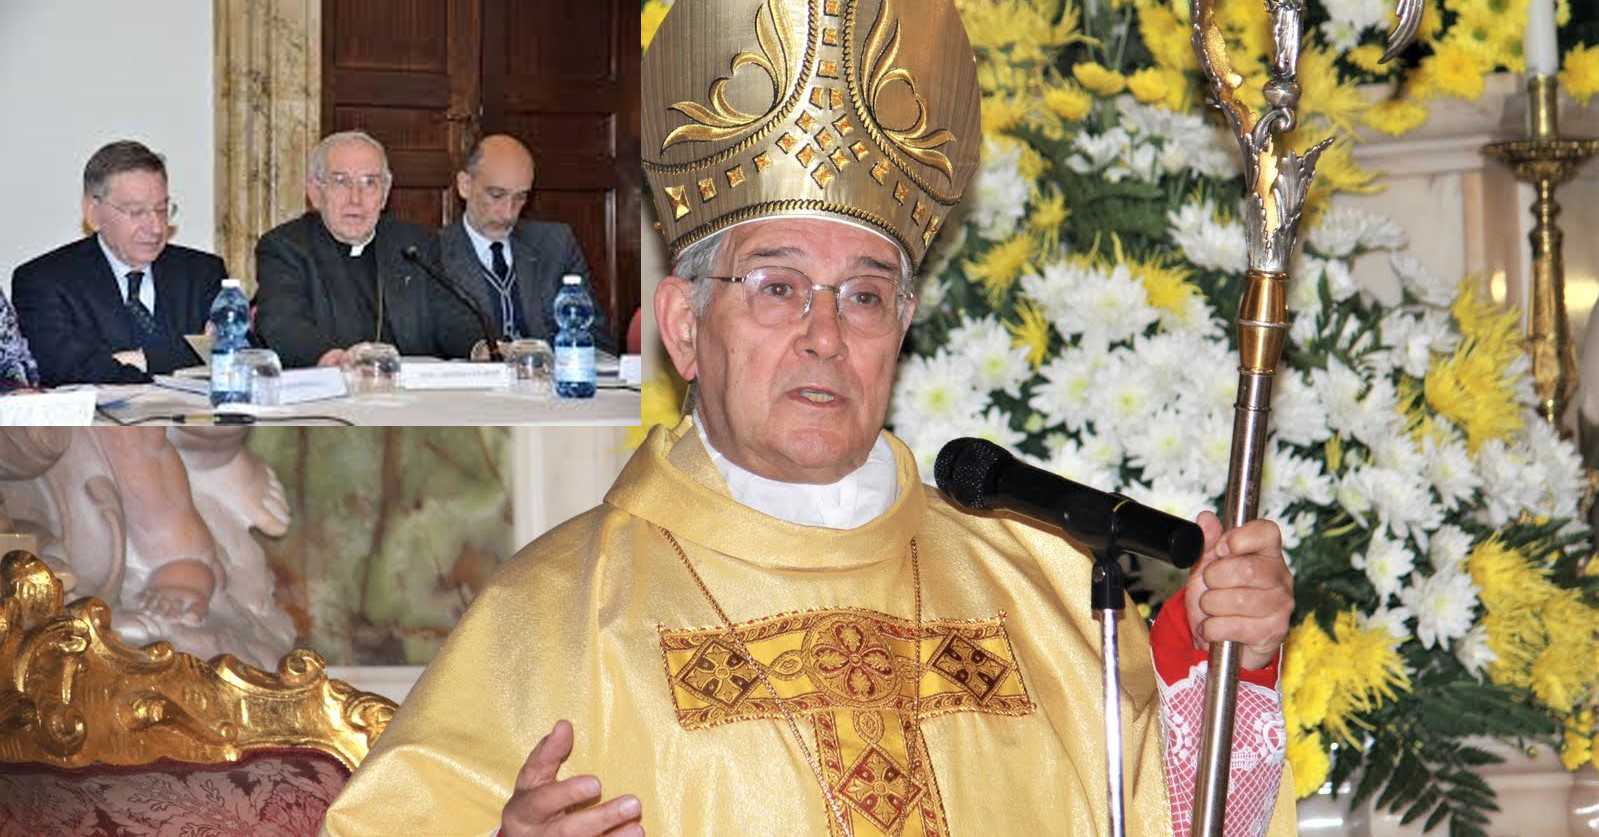 Il presidente emerito Cesare Mirabelli ricorda monsignor Ciliberti "Vescovo coraggioso"